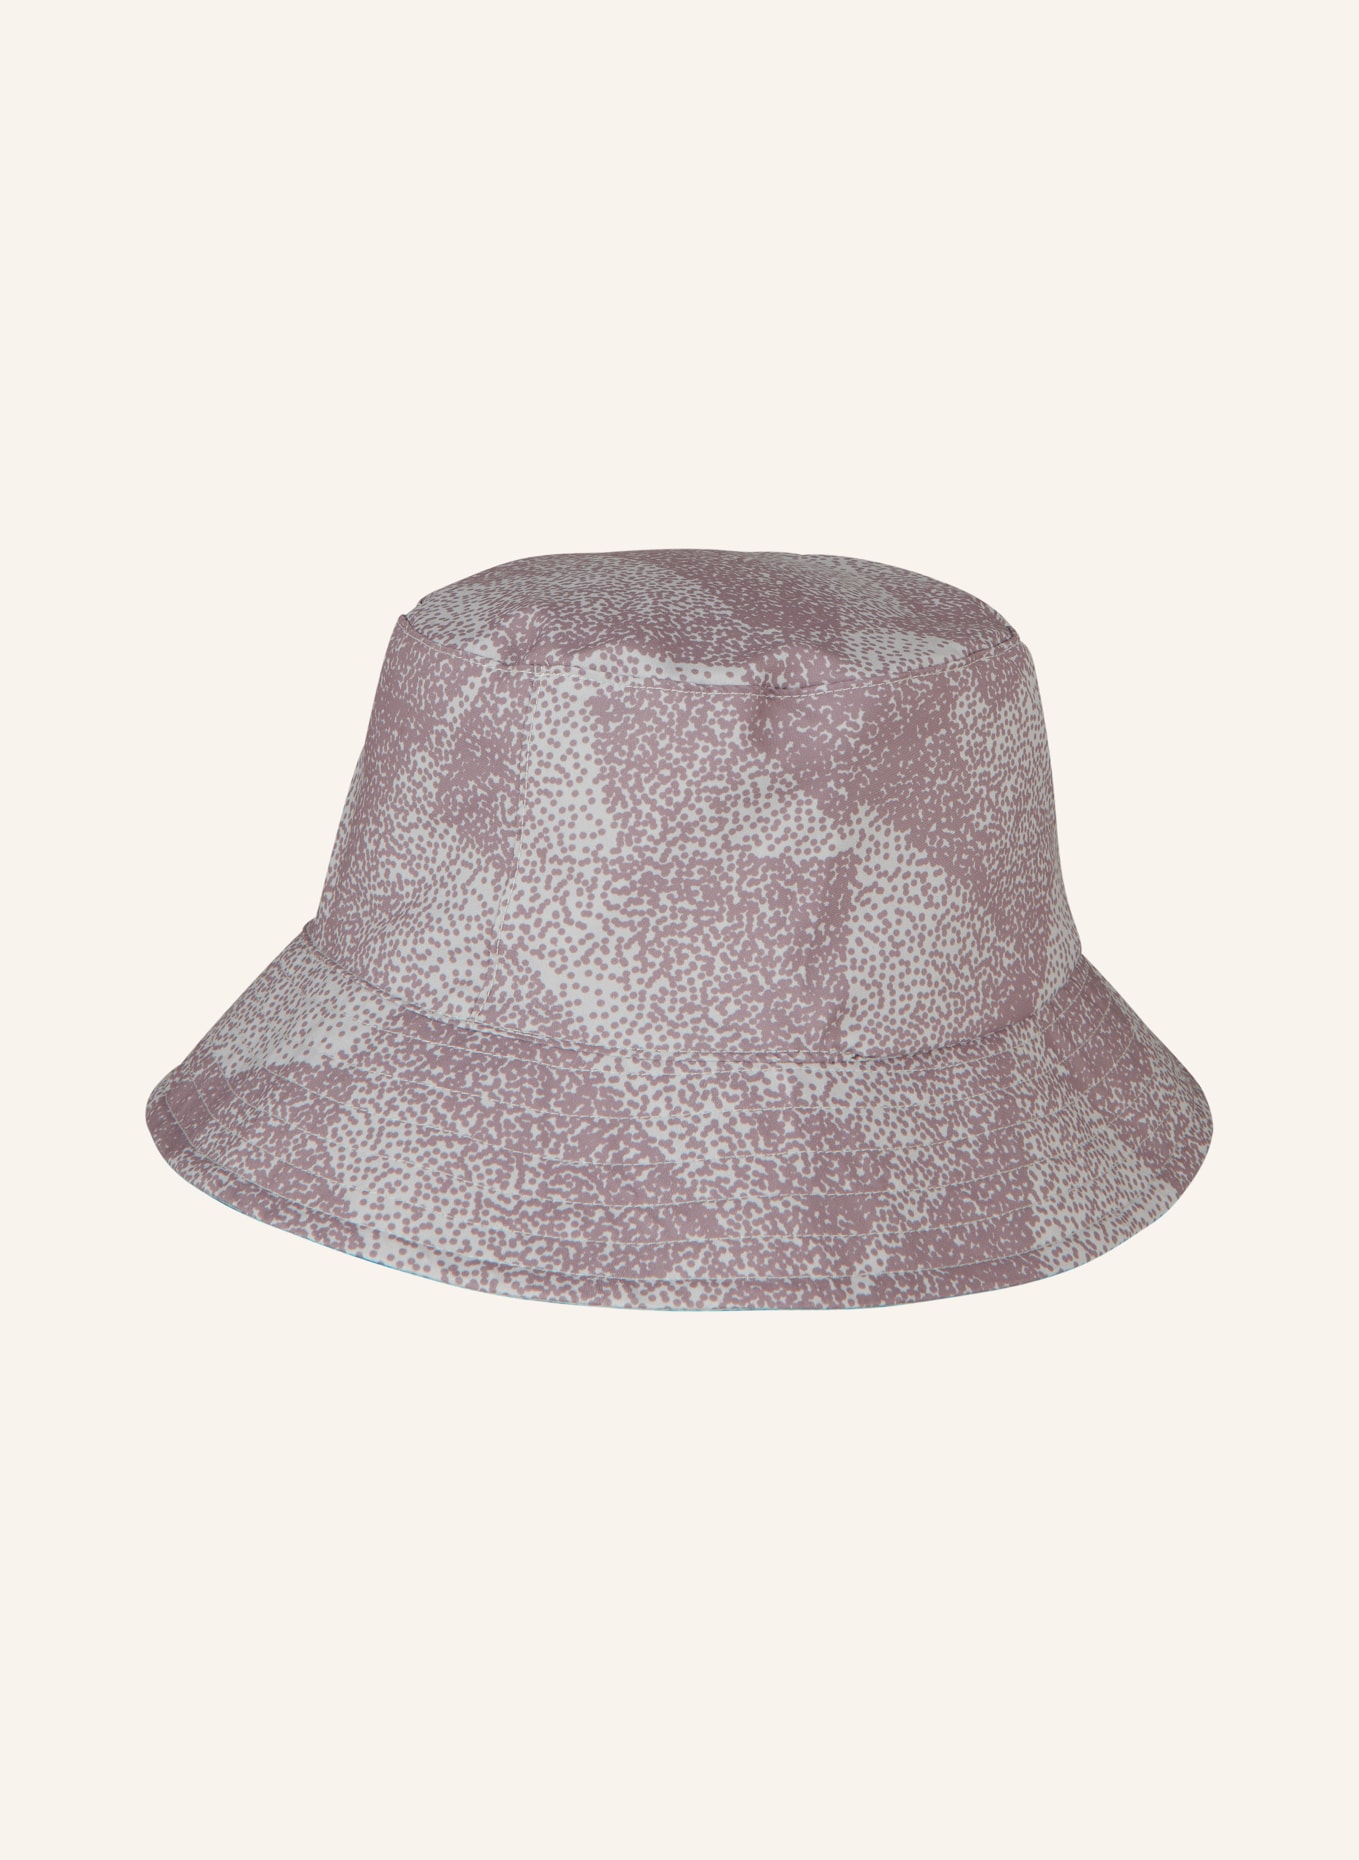 P.A.C. Reversible bucket hat LEDRAS, Color: LIGHT GRAY (Image 3)